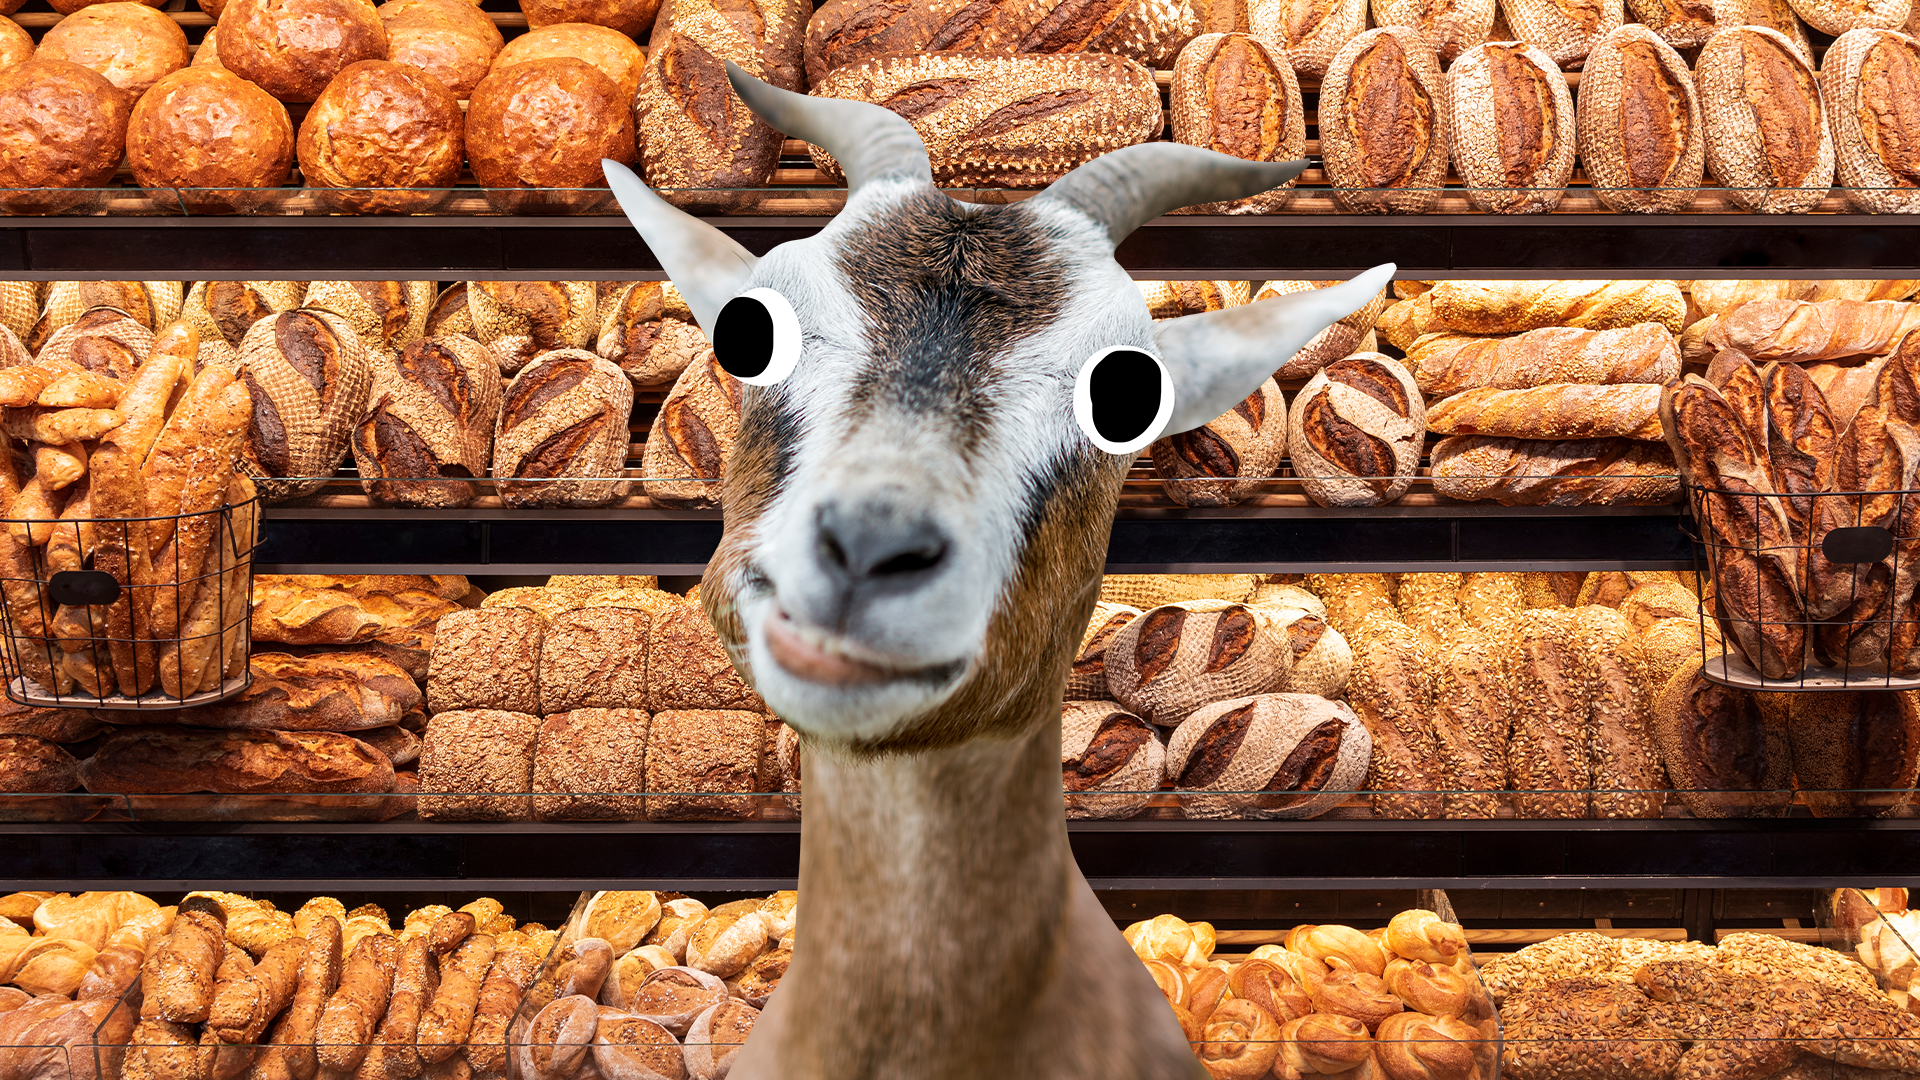 Derpy goat in a bakery